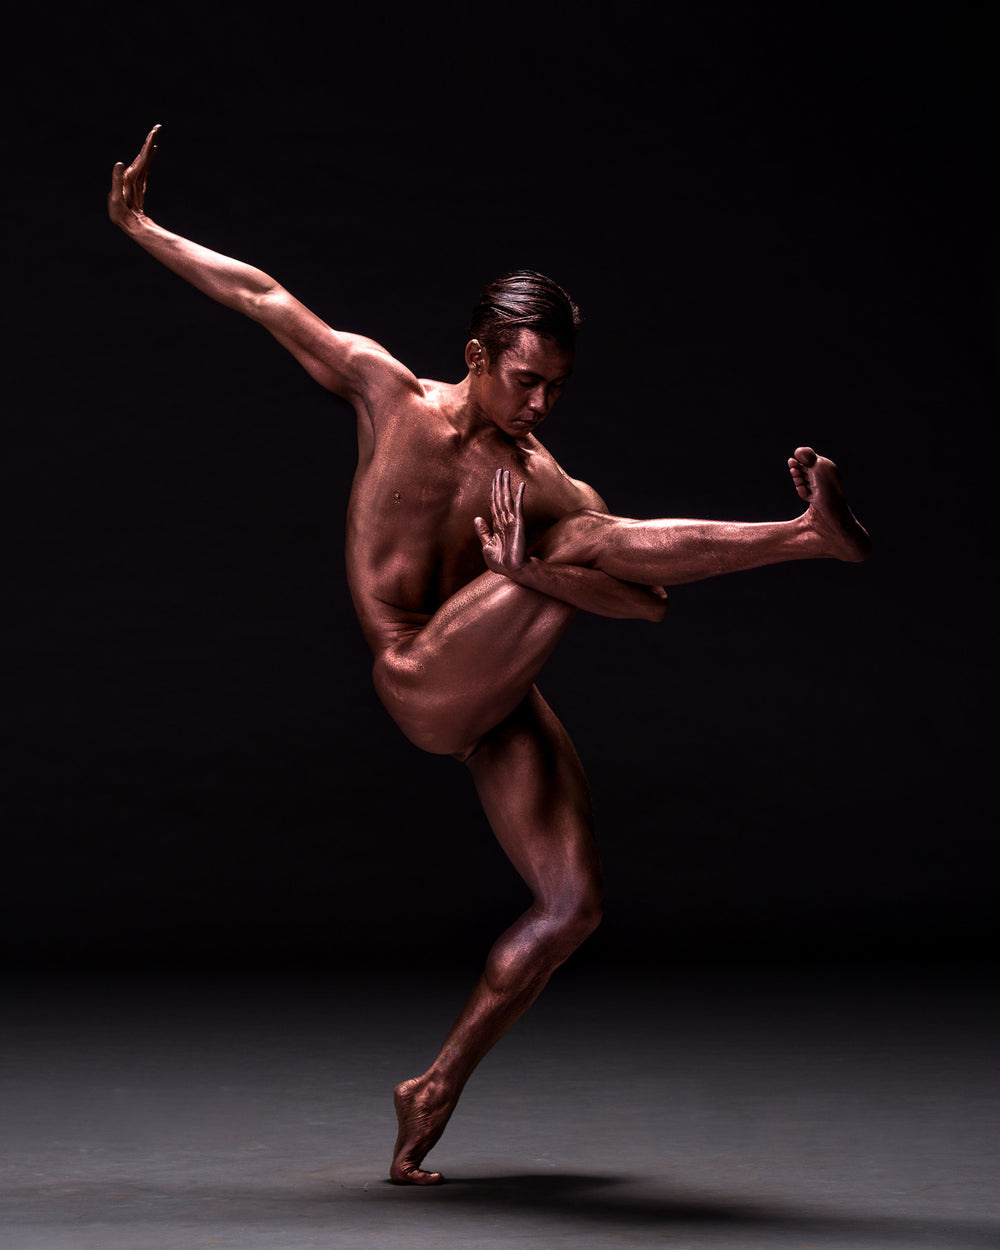 Art Dance Photography Prints - Purchase Online the artwork: Mehron Figures - male dancer nude by Francisco Estevez